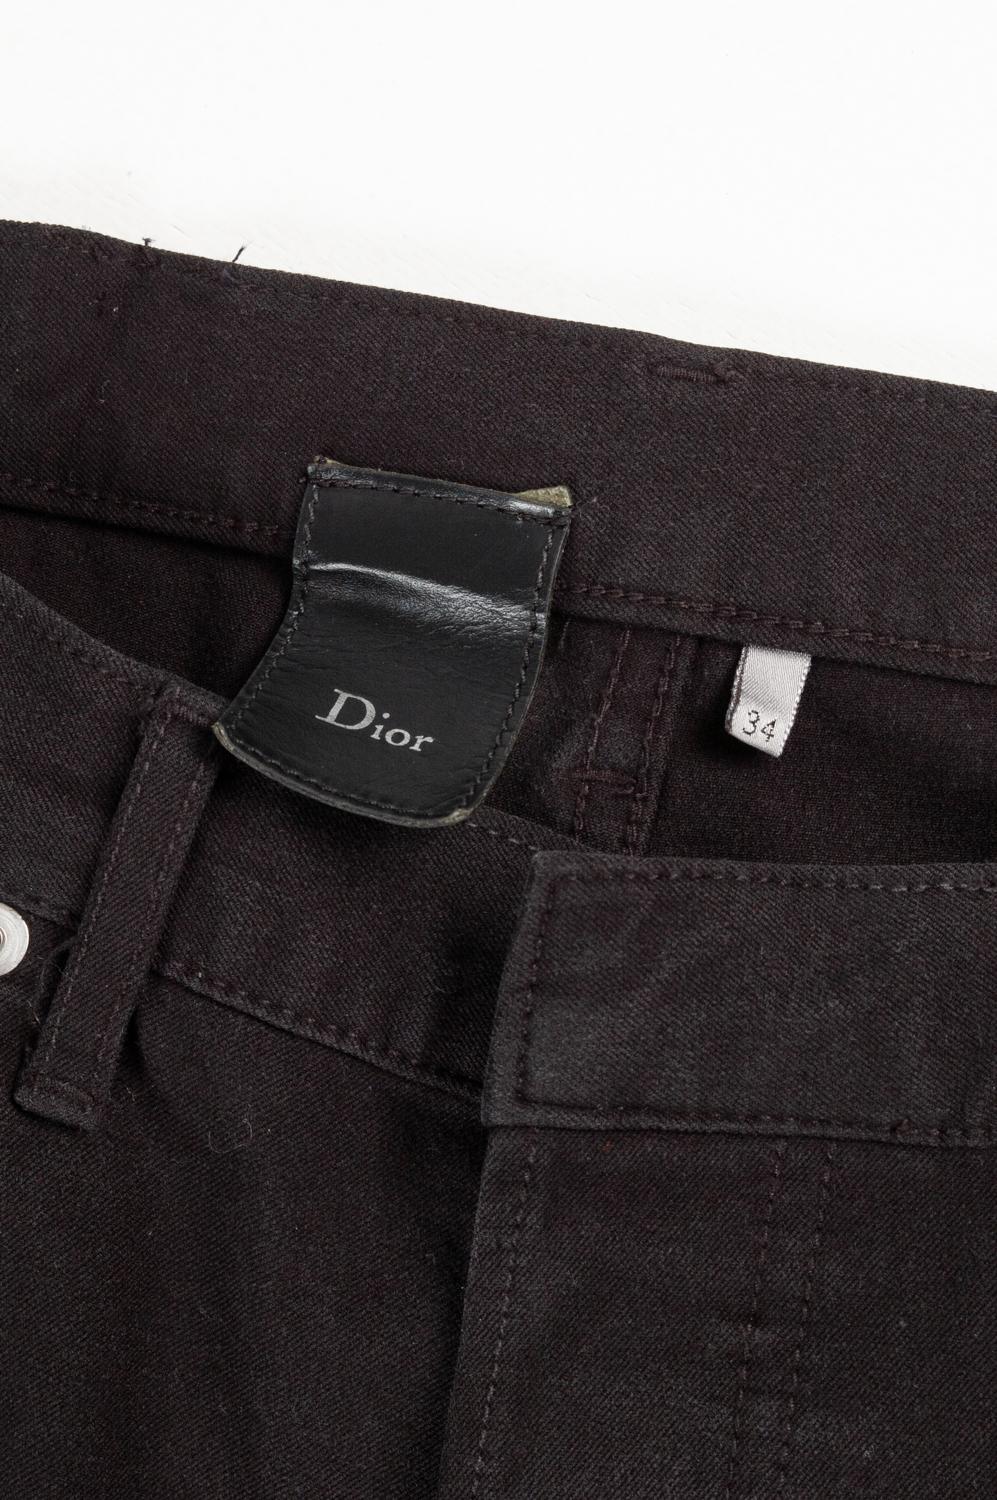 Dior Homme Men Black Jeans Pants Size 34, S520 2